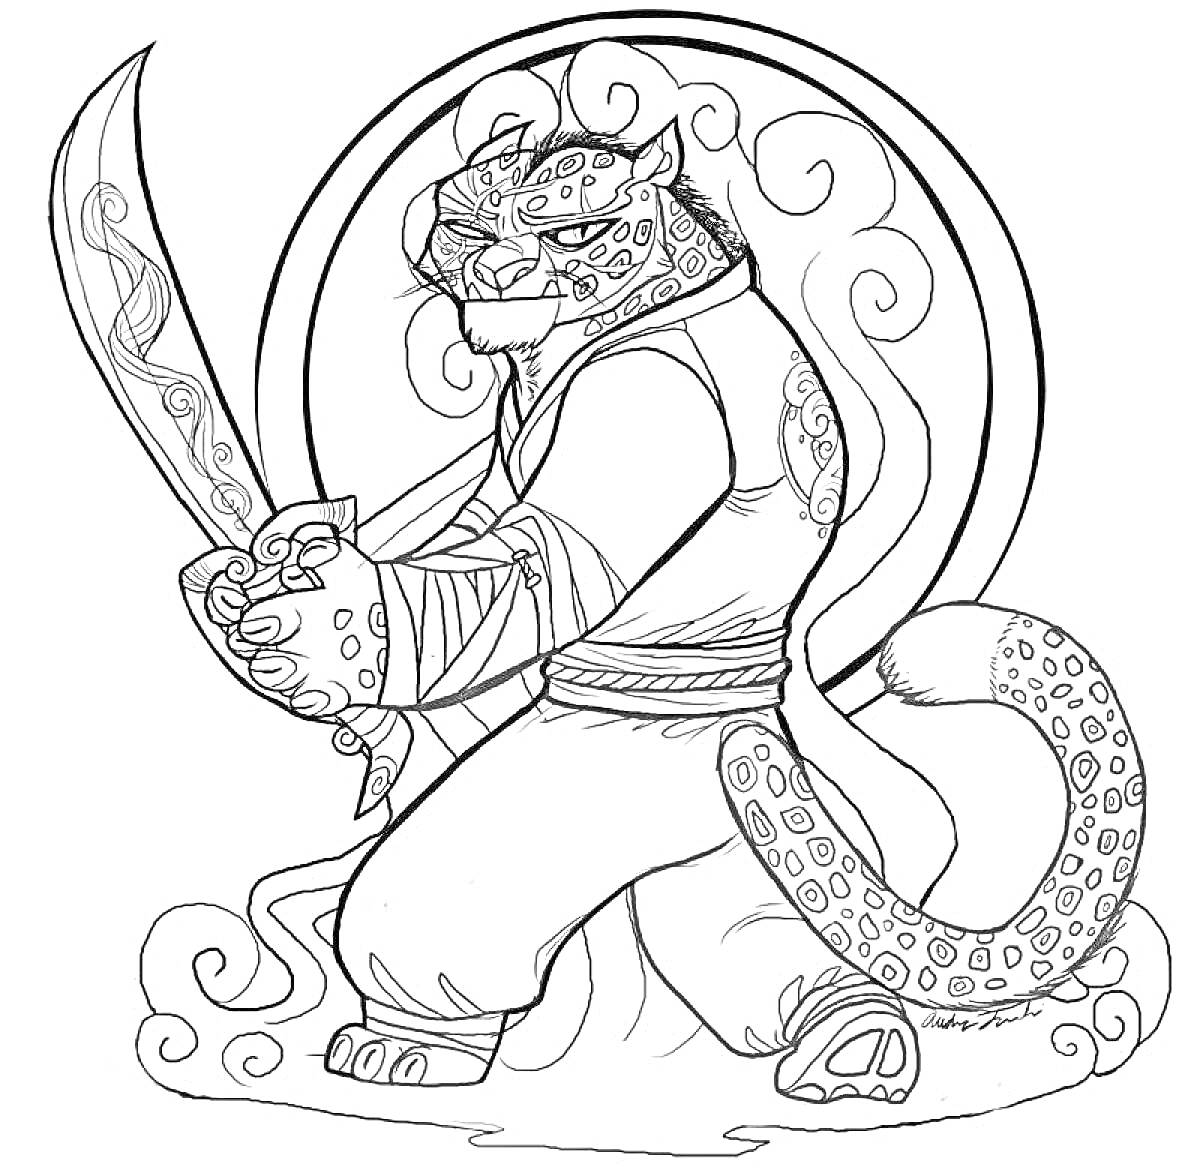 Леопард-самурай с мечом на фоне круга и завитков